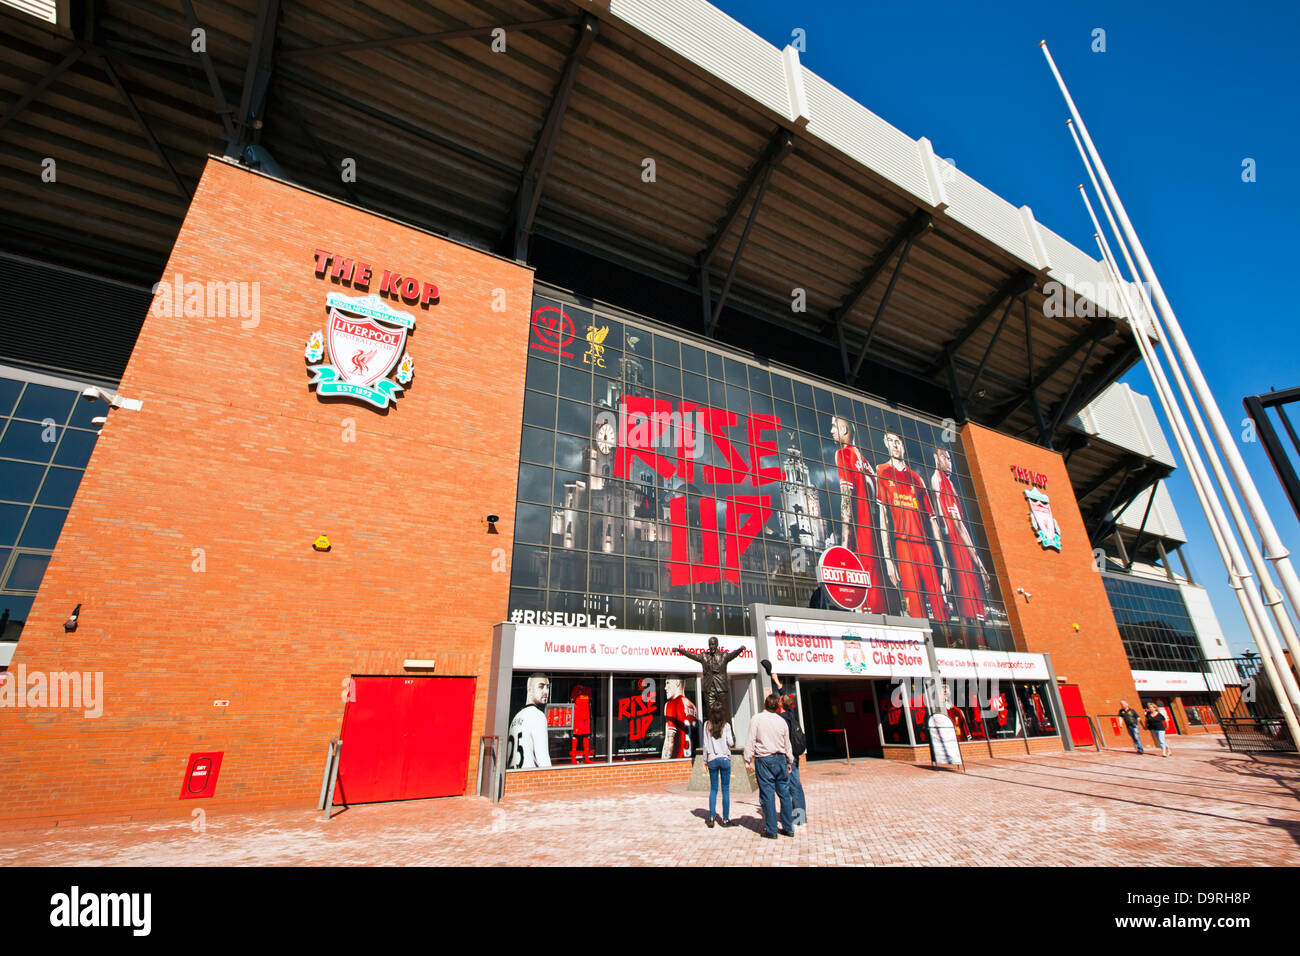 Anfield-Stadion ist die Heimat des Liverpool Football Club einer der erfolgreichsten Fußballvereine der englischen Premier League. Stockfoto